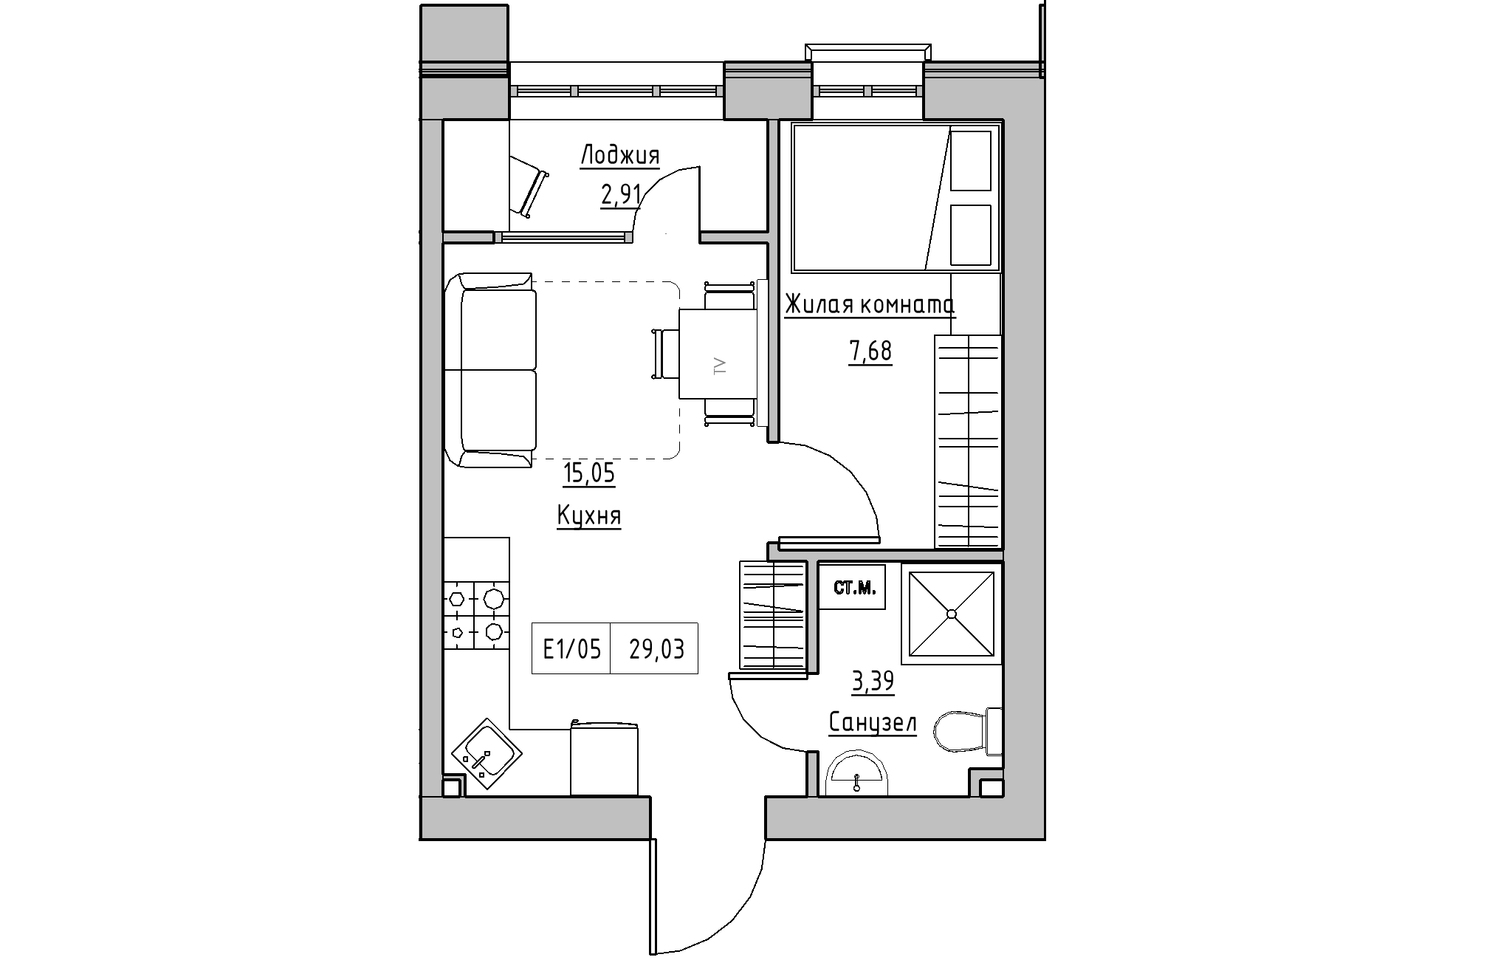 Планировка 1-к квартира площей 29.03м2, KS-010-03/0007.